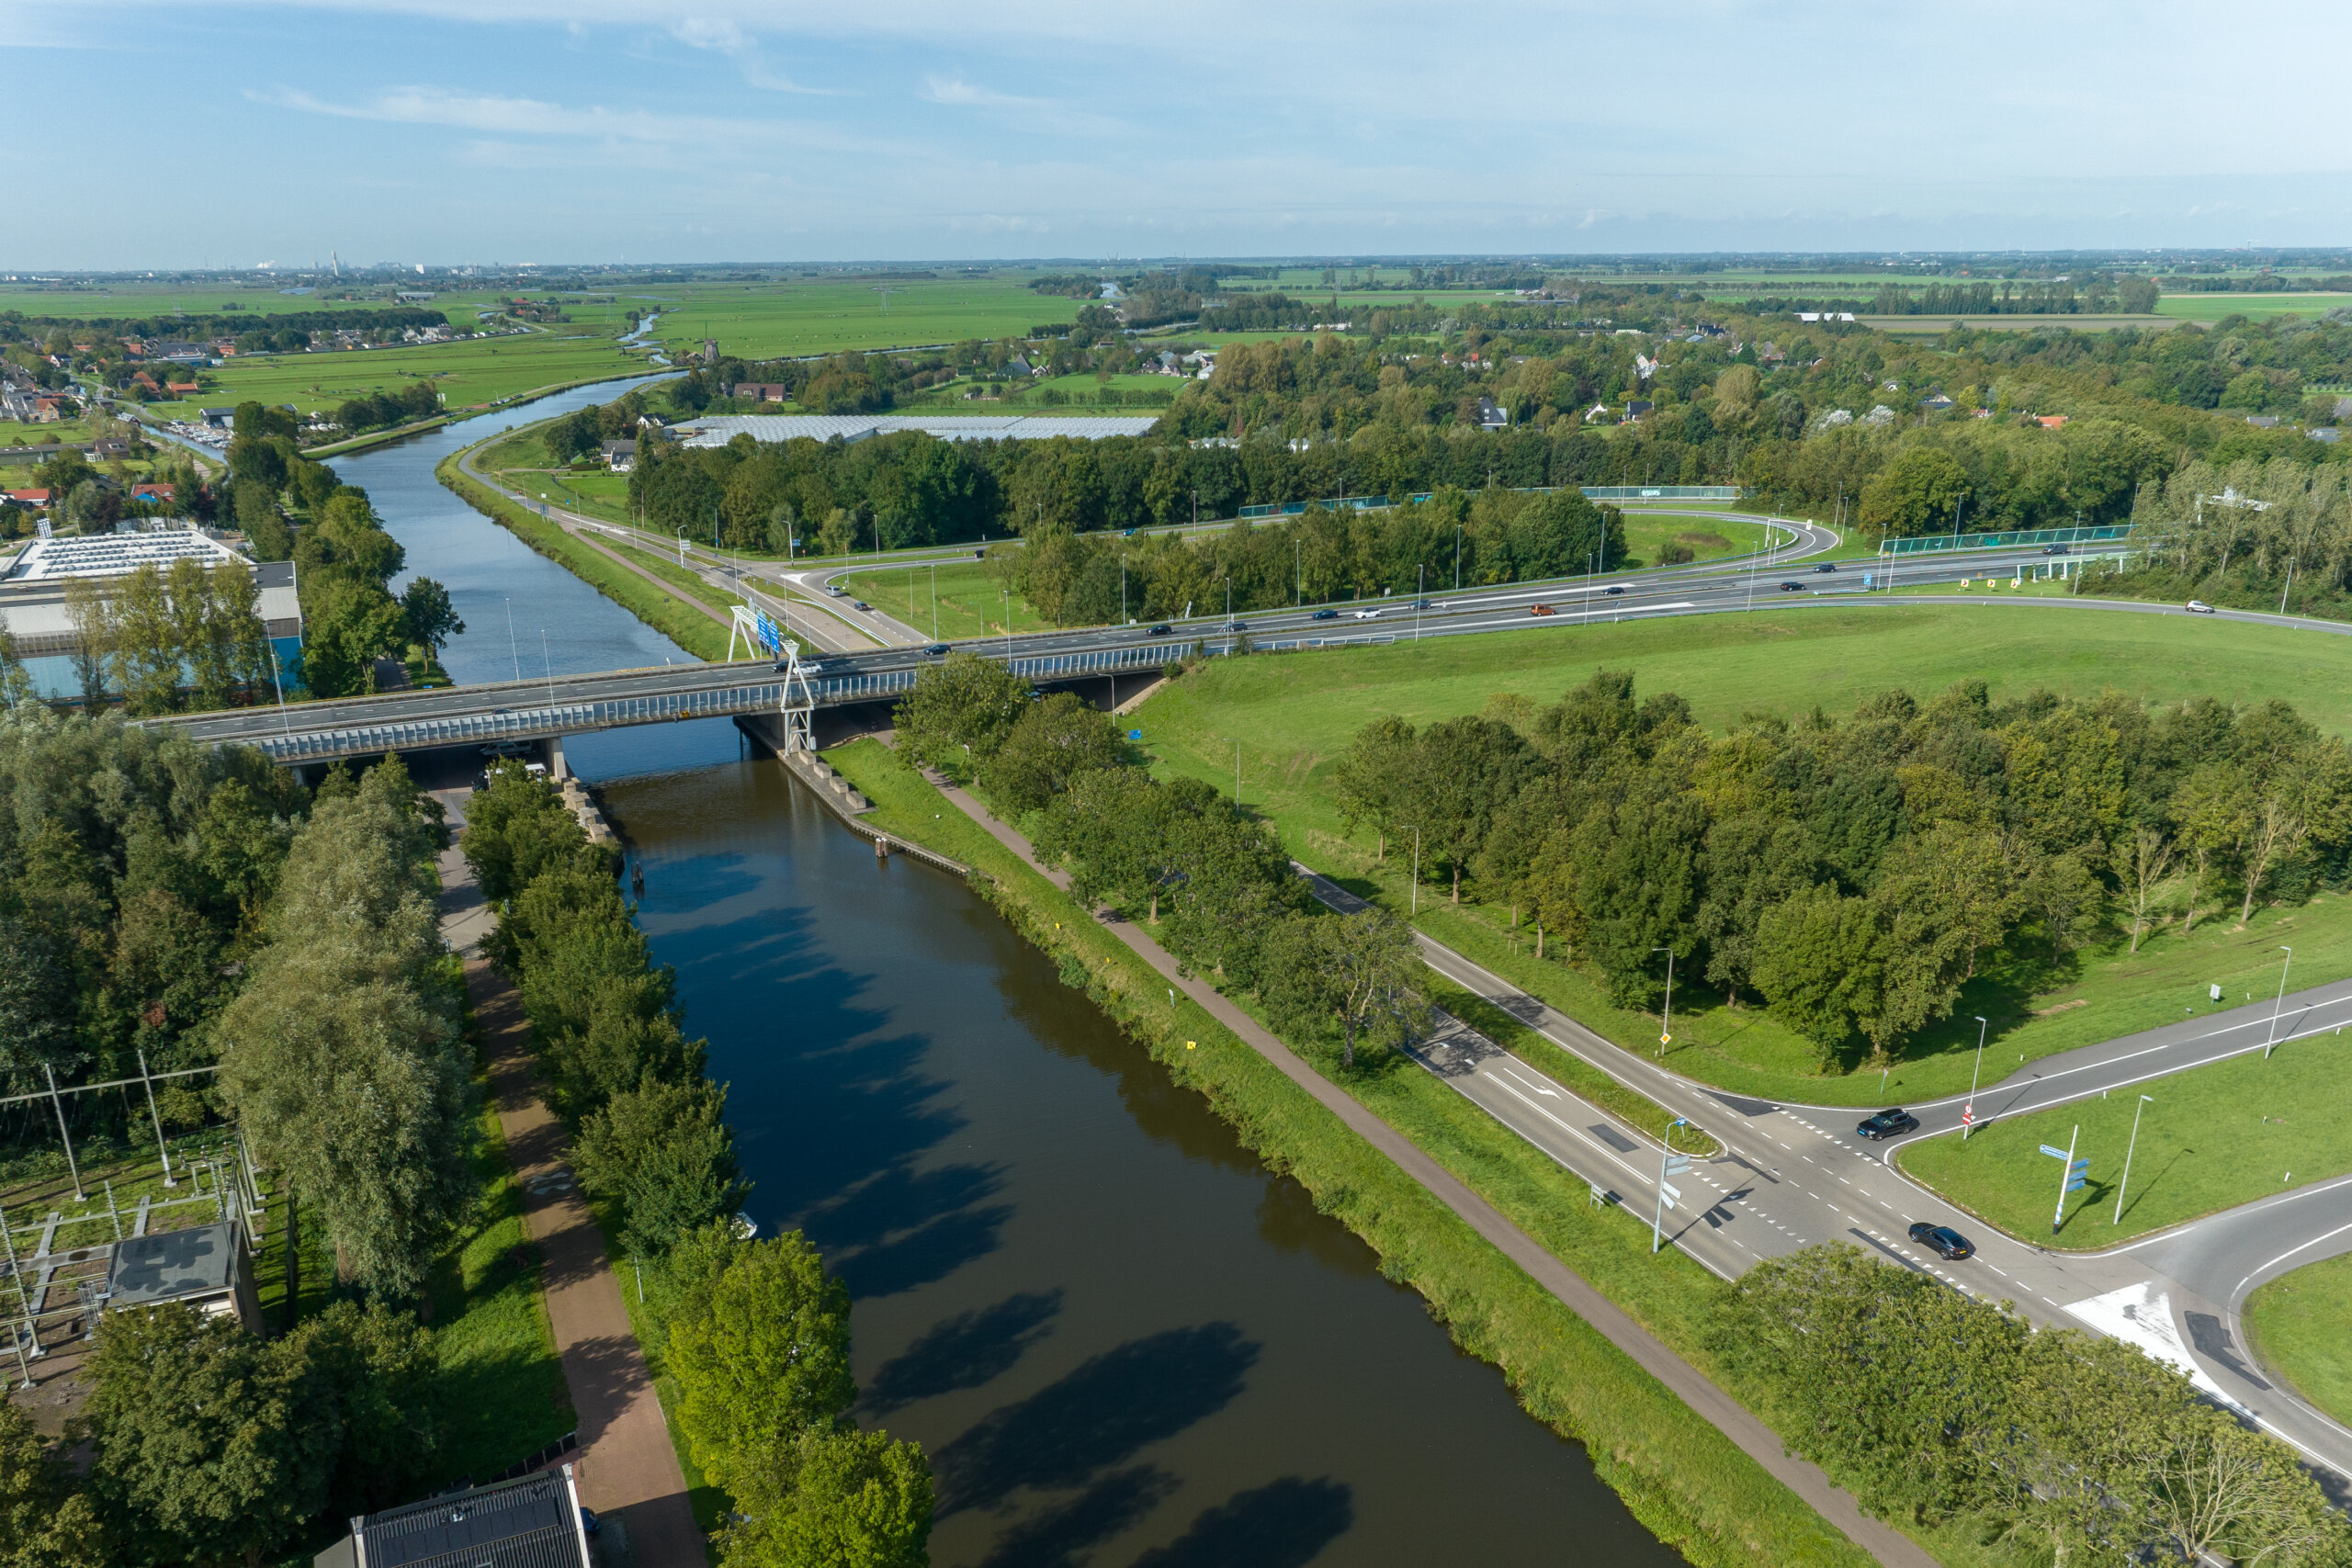 Dinsdagavond 19 maart webinair Rijkswaterstaat over de werkzaamheden brug A7